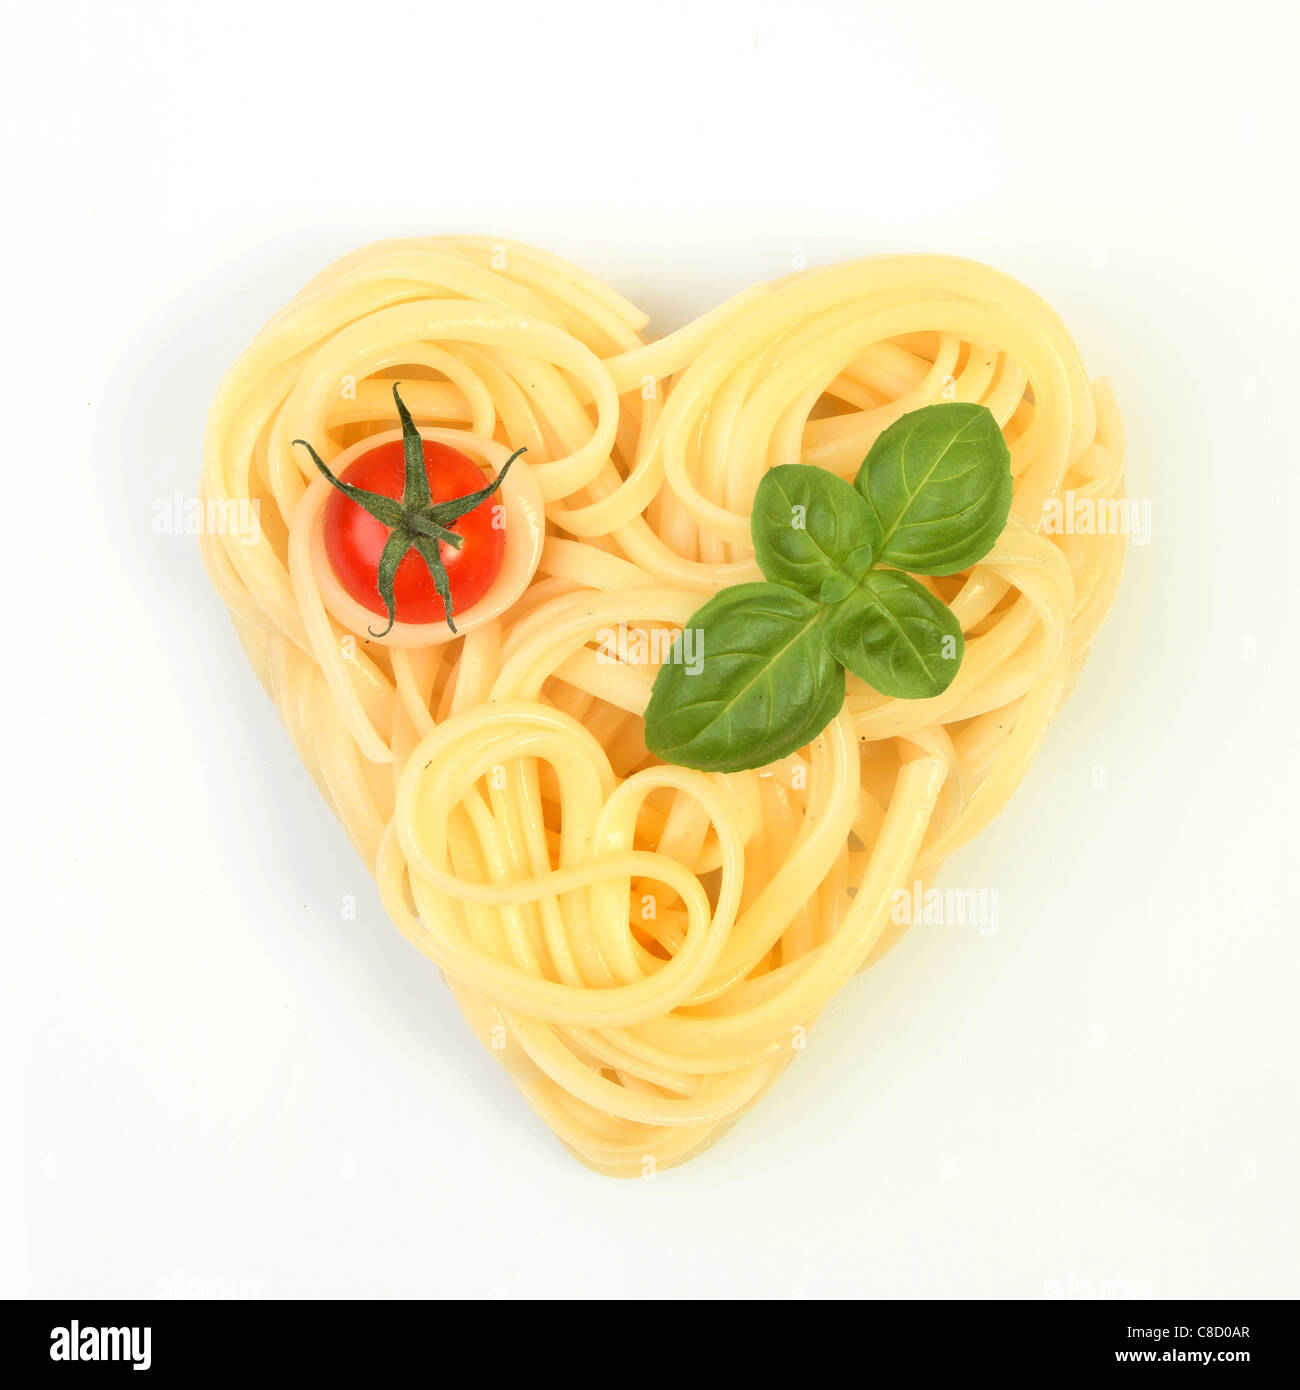 Cibo sano, spaghetti in una forma di cuore con pomodoro e basilico su sfondo bianco Foto Stock